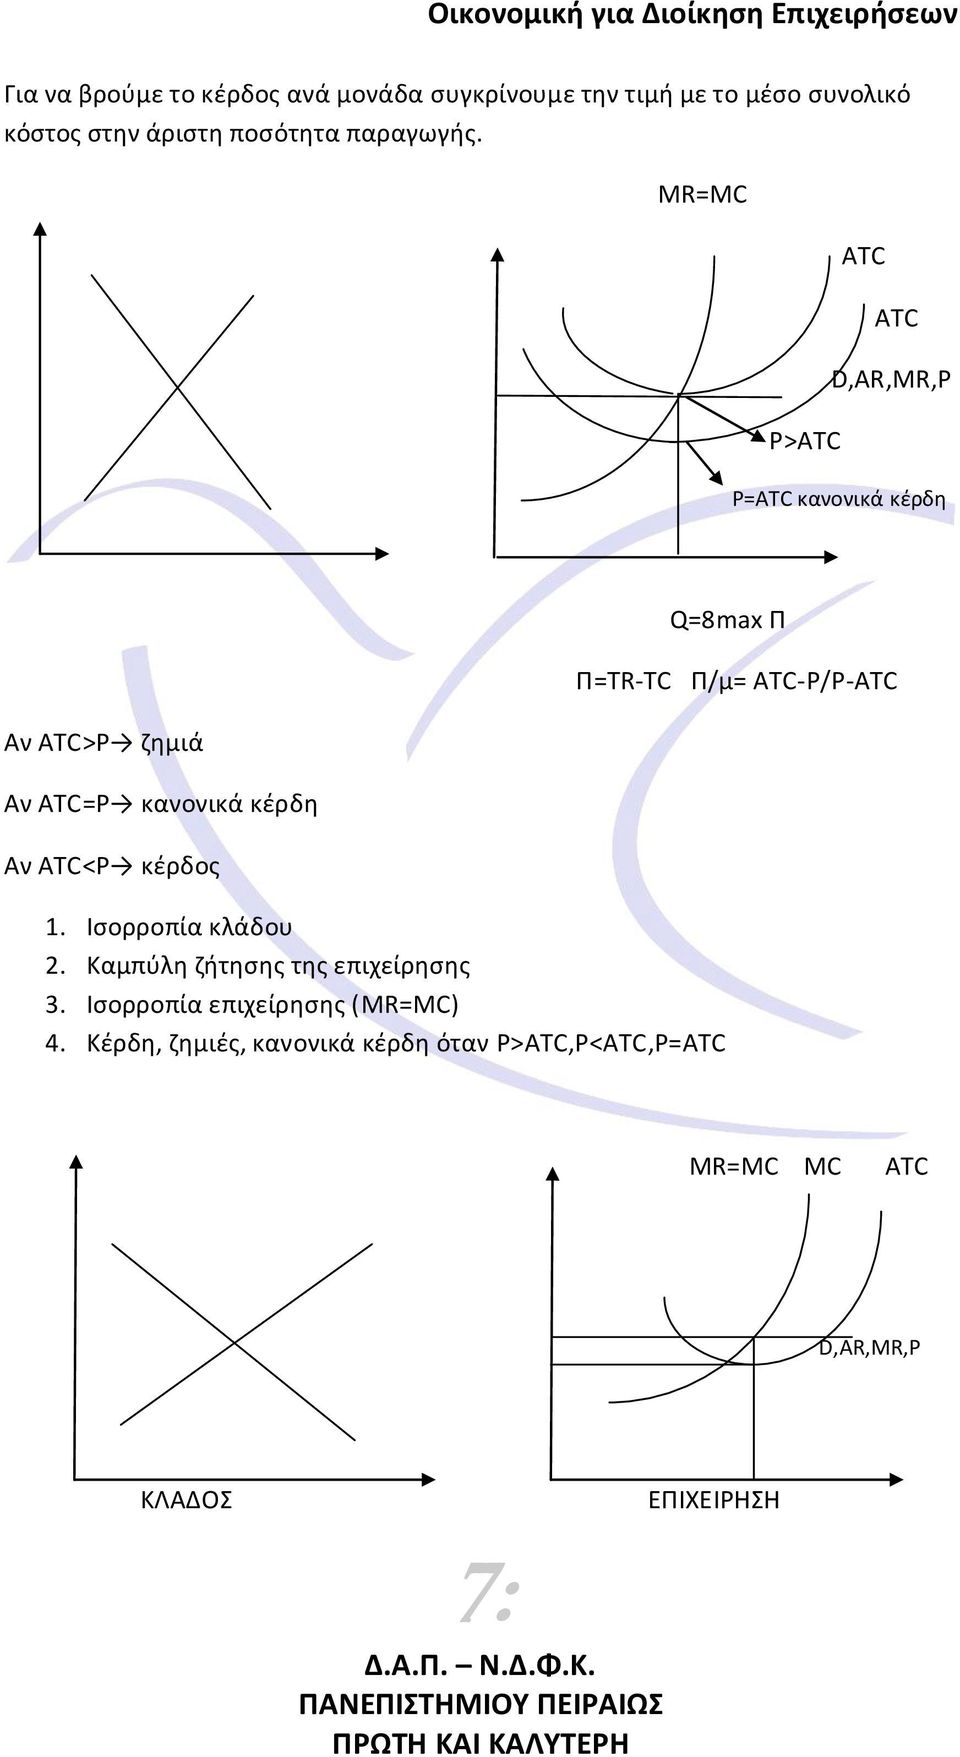 MR=MC P>ATC ATC ATC D,AR,MR,P P=ATC κανονικά κζρδθ Αν ATC>P ηθμιά Αν ATC=P κανονικά κζρδθ Αν ATC<P κζρδοσ